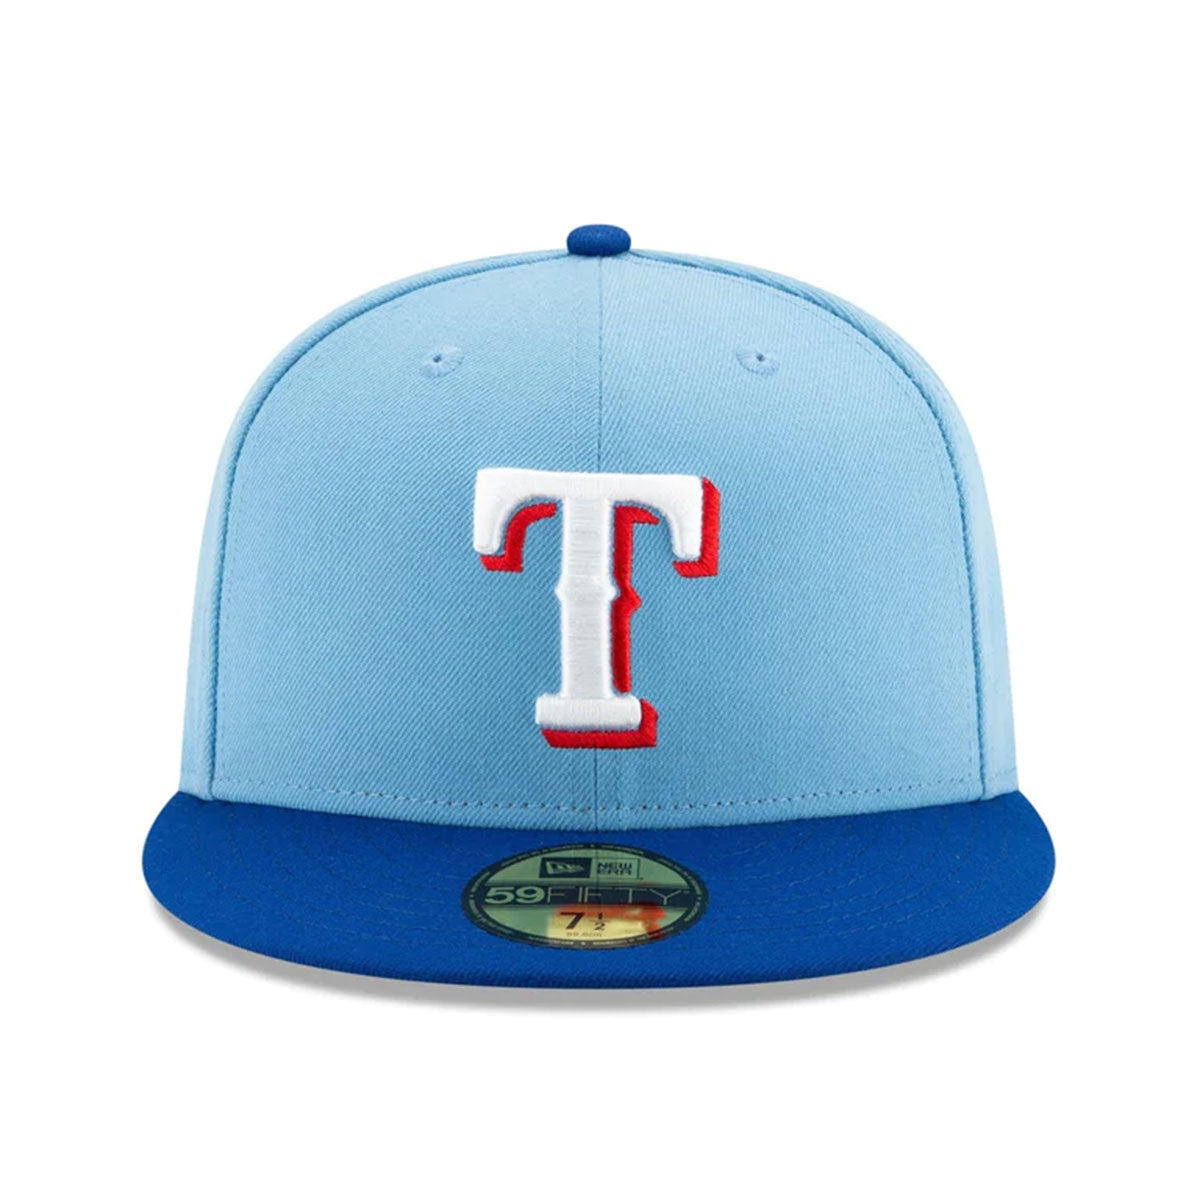 NEW ERA Texas Rangers - 59FIFTY ON-FIELD ACPERF TEXRAN ALT2 23J【13554964】